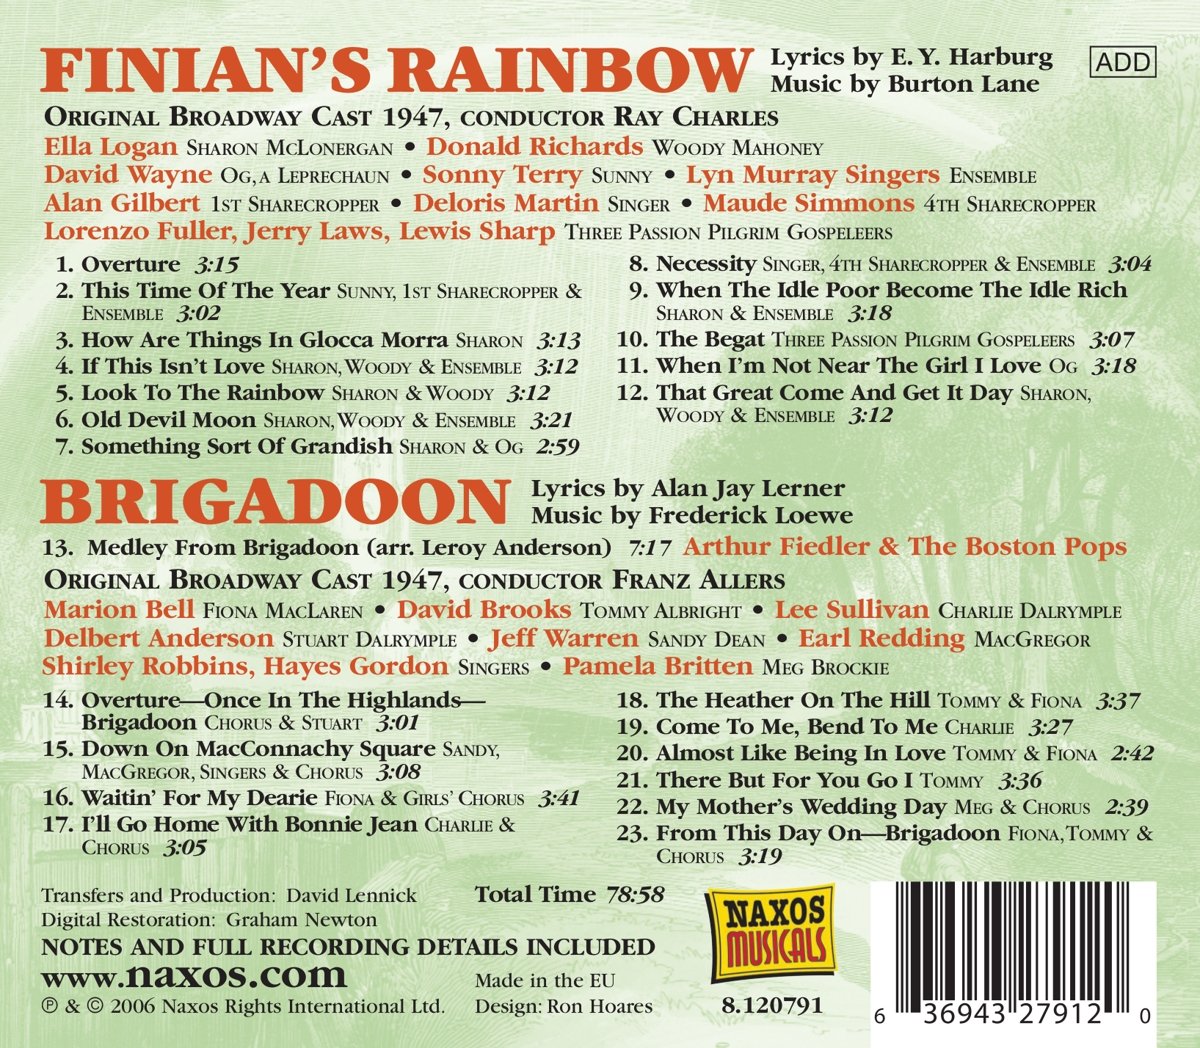 하벅 & 버튼 레인: 뮤지컬 '피니안의 무지개' / 레너 & 로우: '브리가둔' (Harburg & Lane: Finian's Rainbow / Lenner & Loewe: Brigadoon)